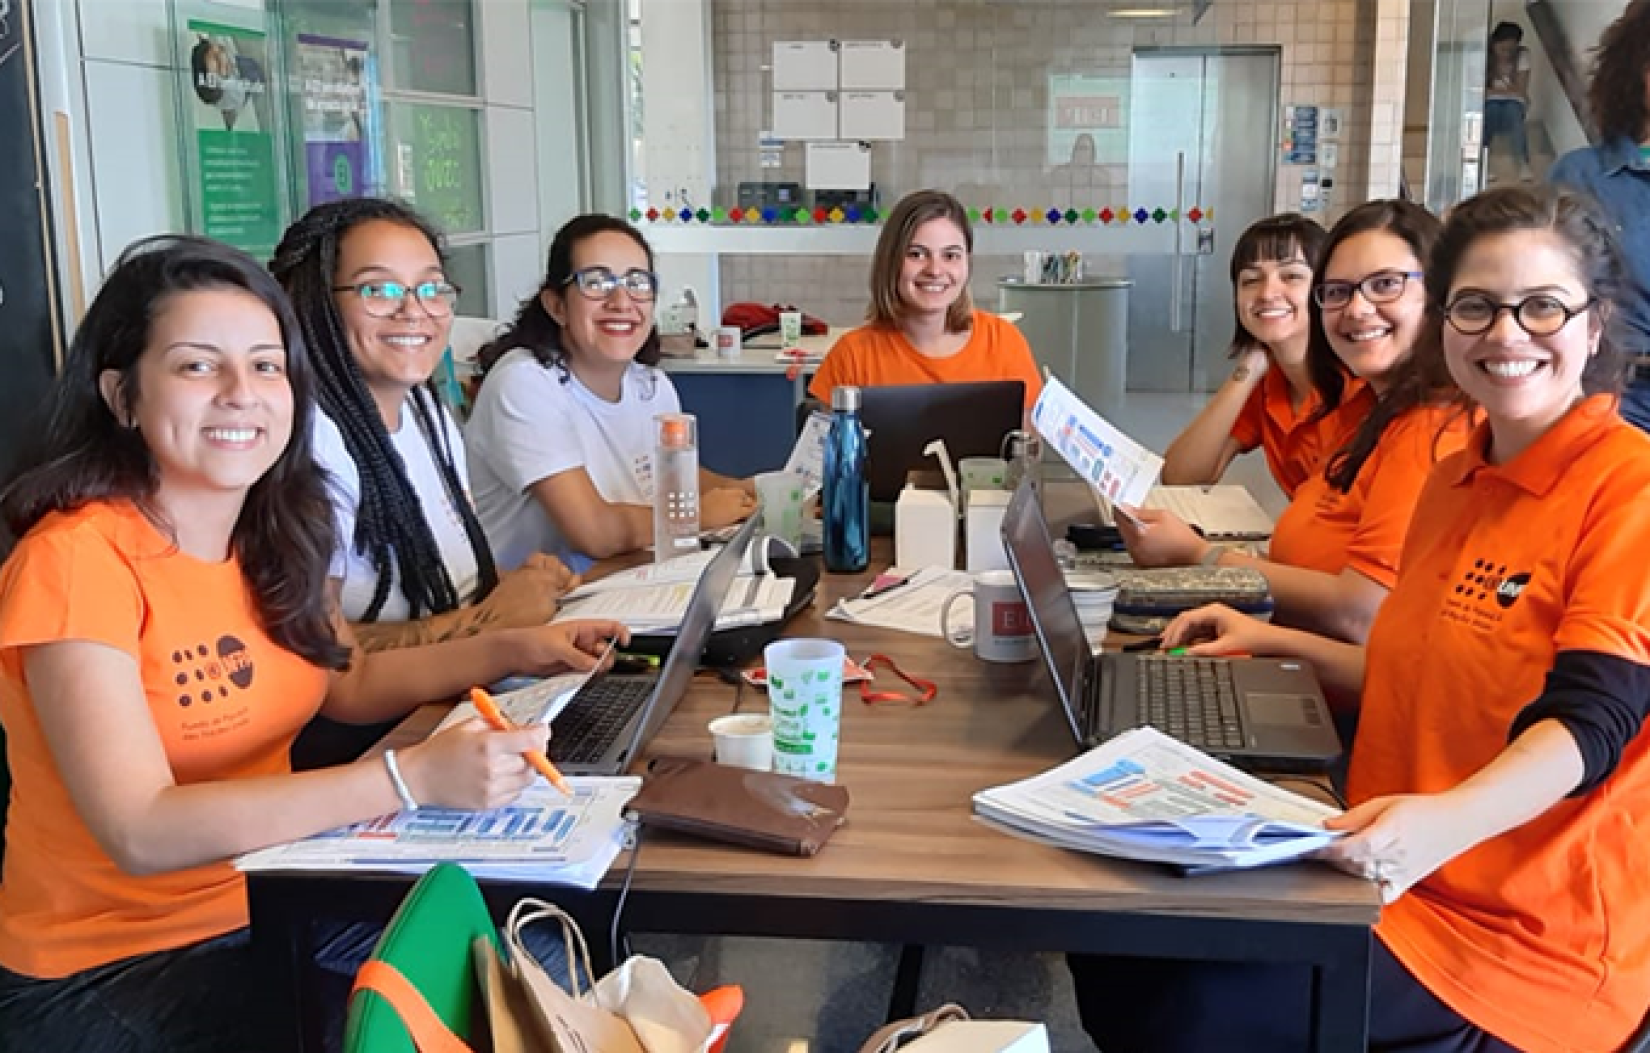 Mulheres da equipe do UNFPA participaram da atividade para aprimorar conhecimento em gestão de projetos. Foto: UNFPA Brasil